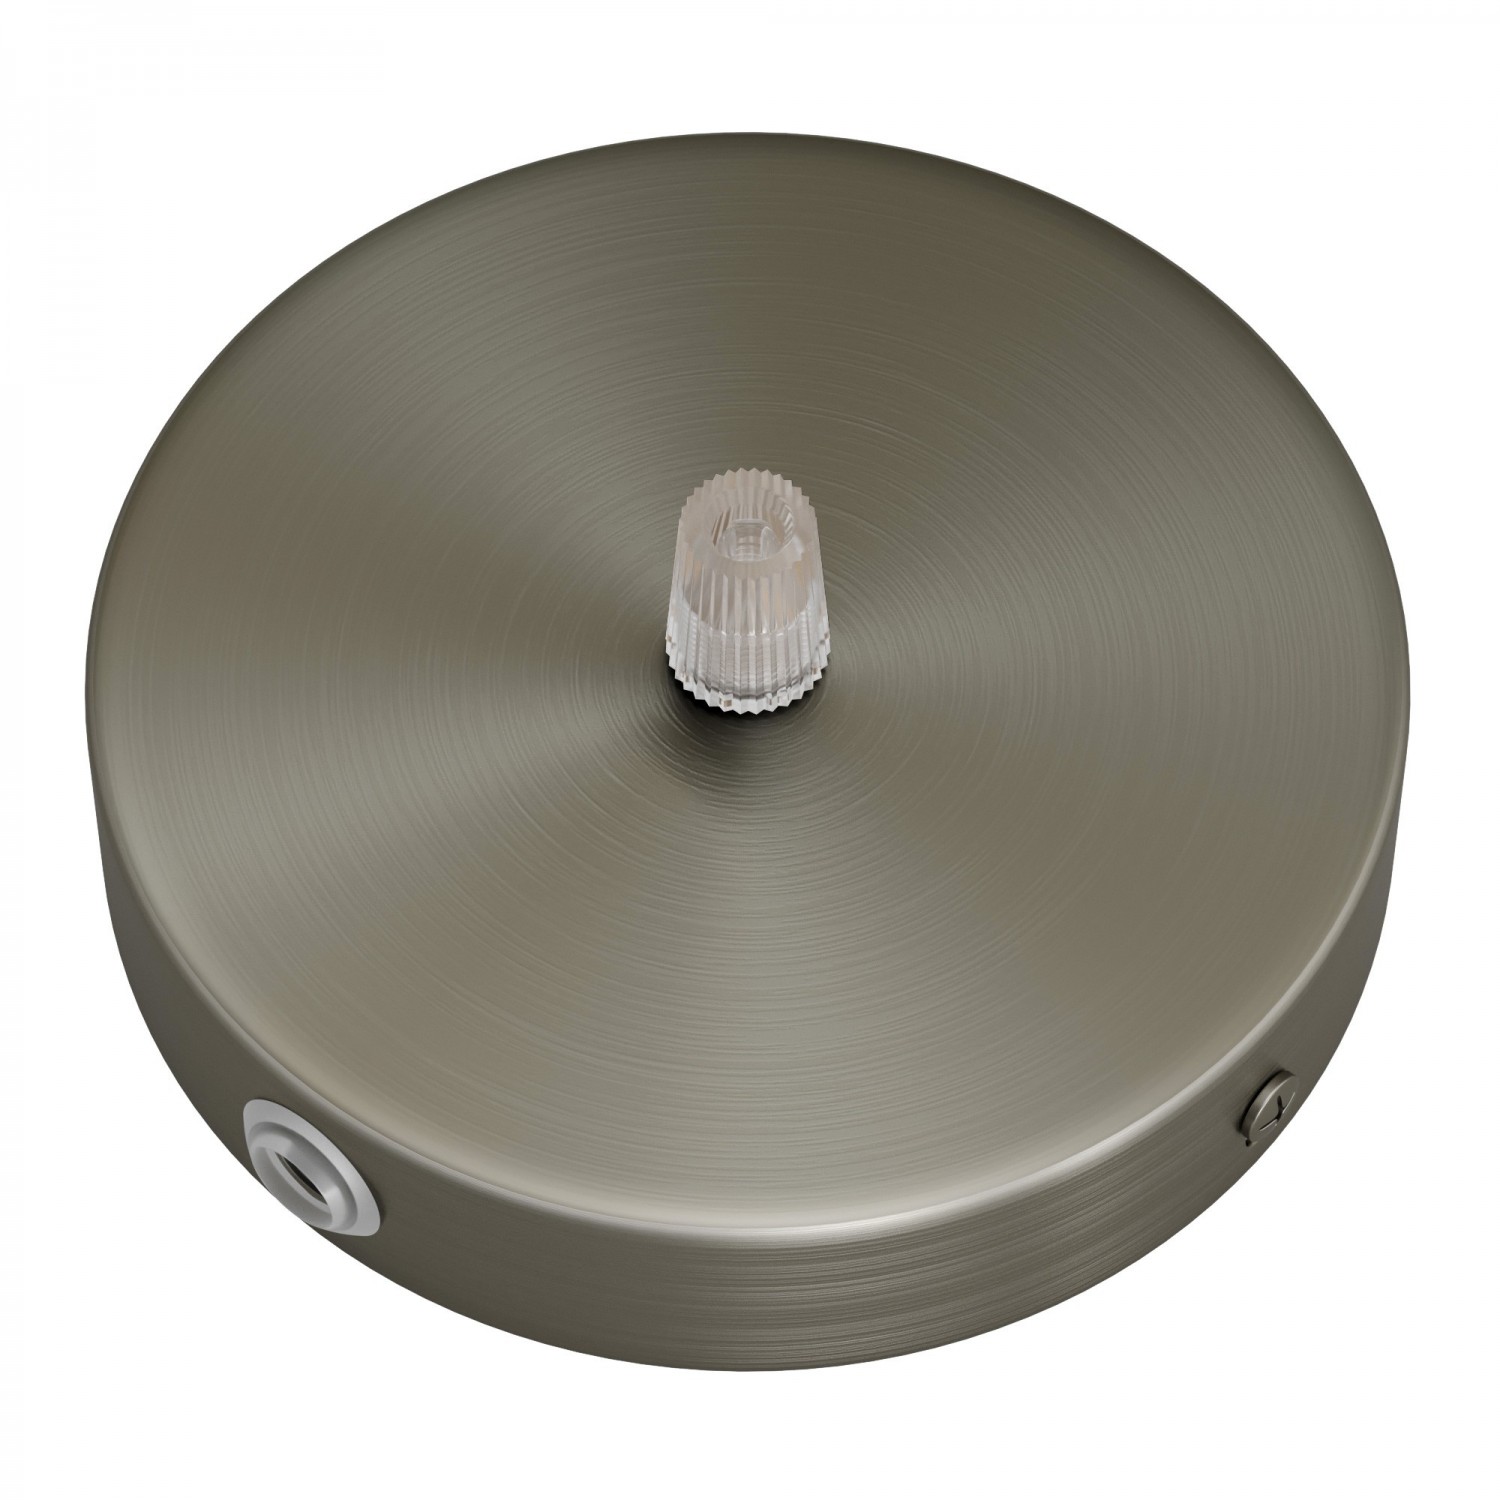 Zylindrischer Lampenbaldachin Kit aus Metall mit 1 Haupt- und 2 Seitenlöchern